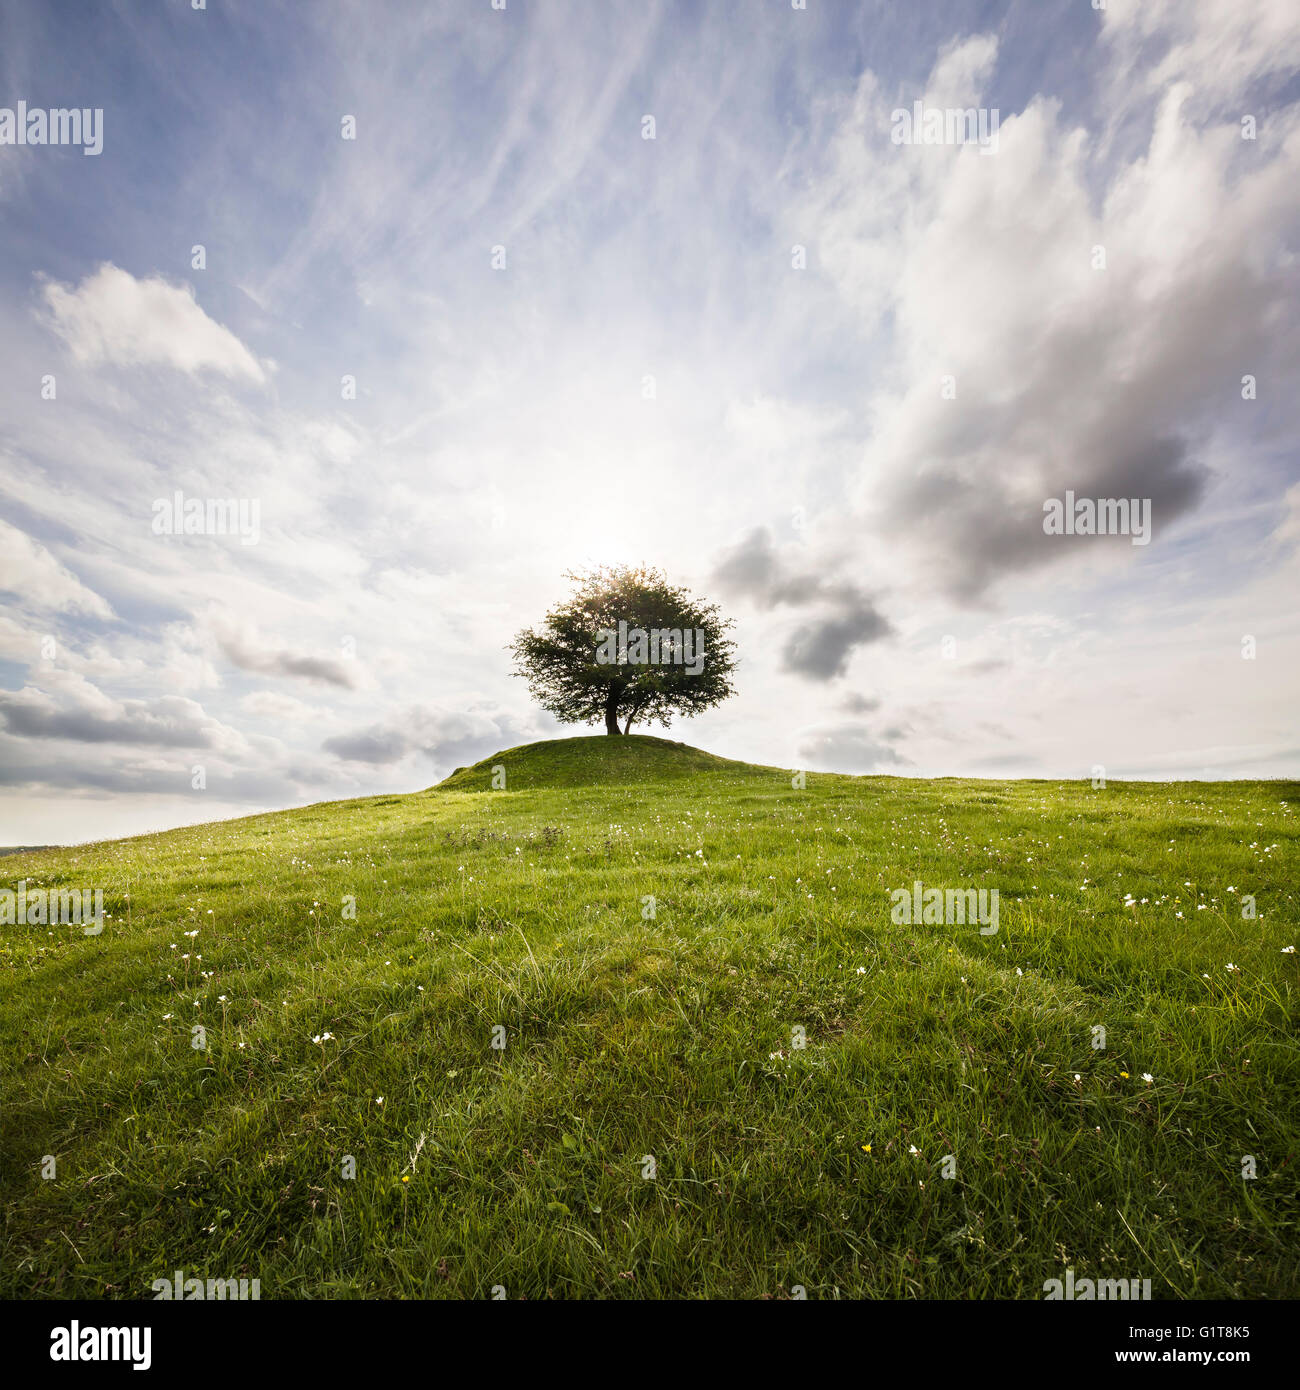 Lonely tree sur une colline face au soleil avec un ciel dramatique. Osterlen, Skane / Scania, la Suède. La Scandinavie. Banque D'Images